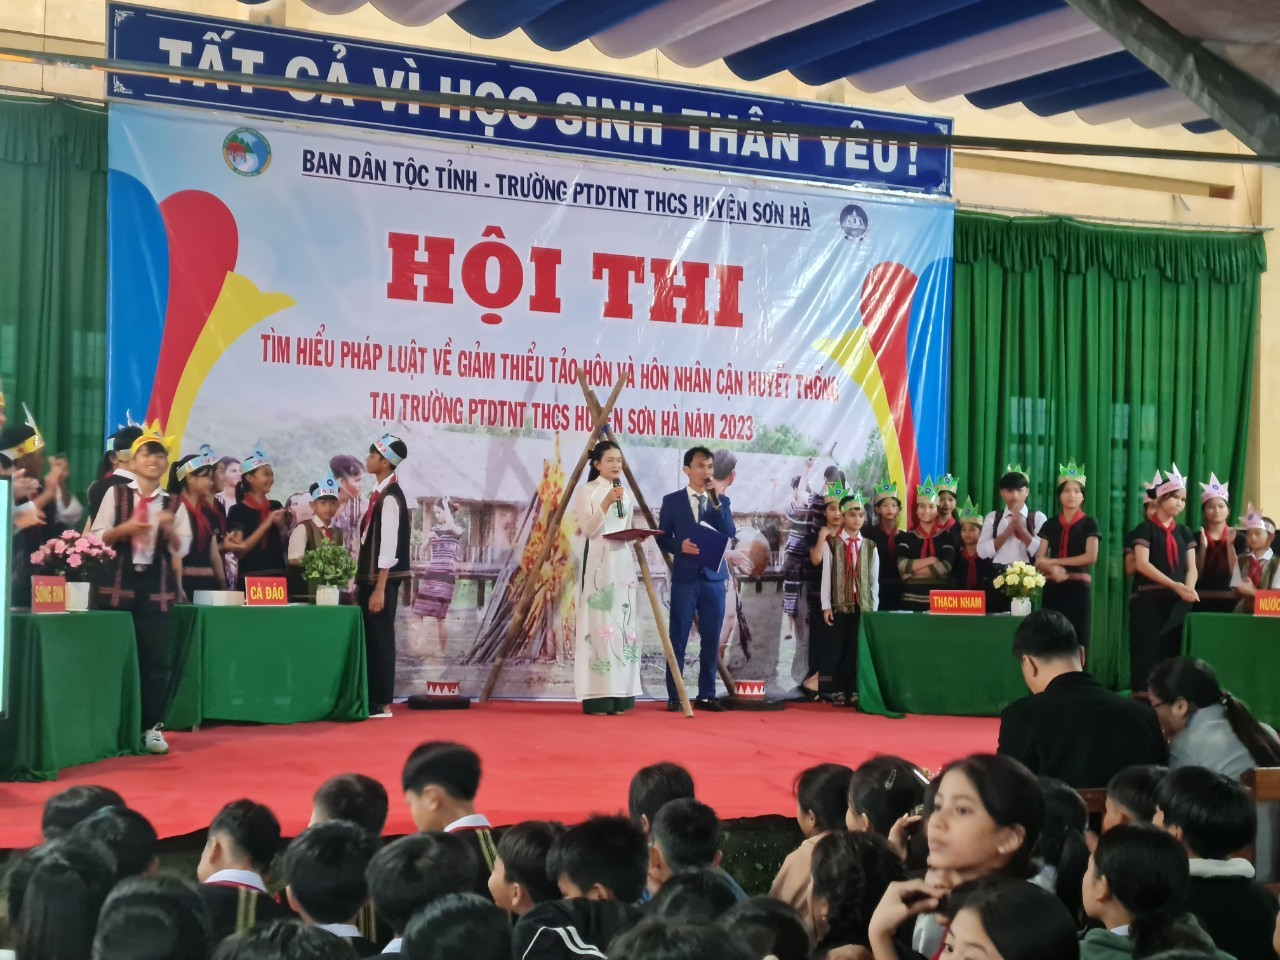 Ban Dân tộc tỉnh Quảng Ngãi phối hợp với Trường Phổ thông dân tộc nội trú Trung học cơ sở (PTDTNT THCS) Sơn Hà tổ chức Hội thi tuyên truyền pháp luật về tảo hôn và hôn nhân cận huyết thống năm 2023